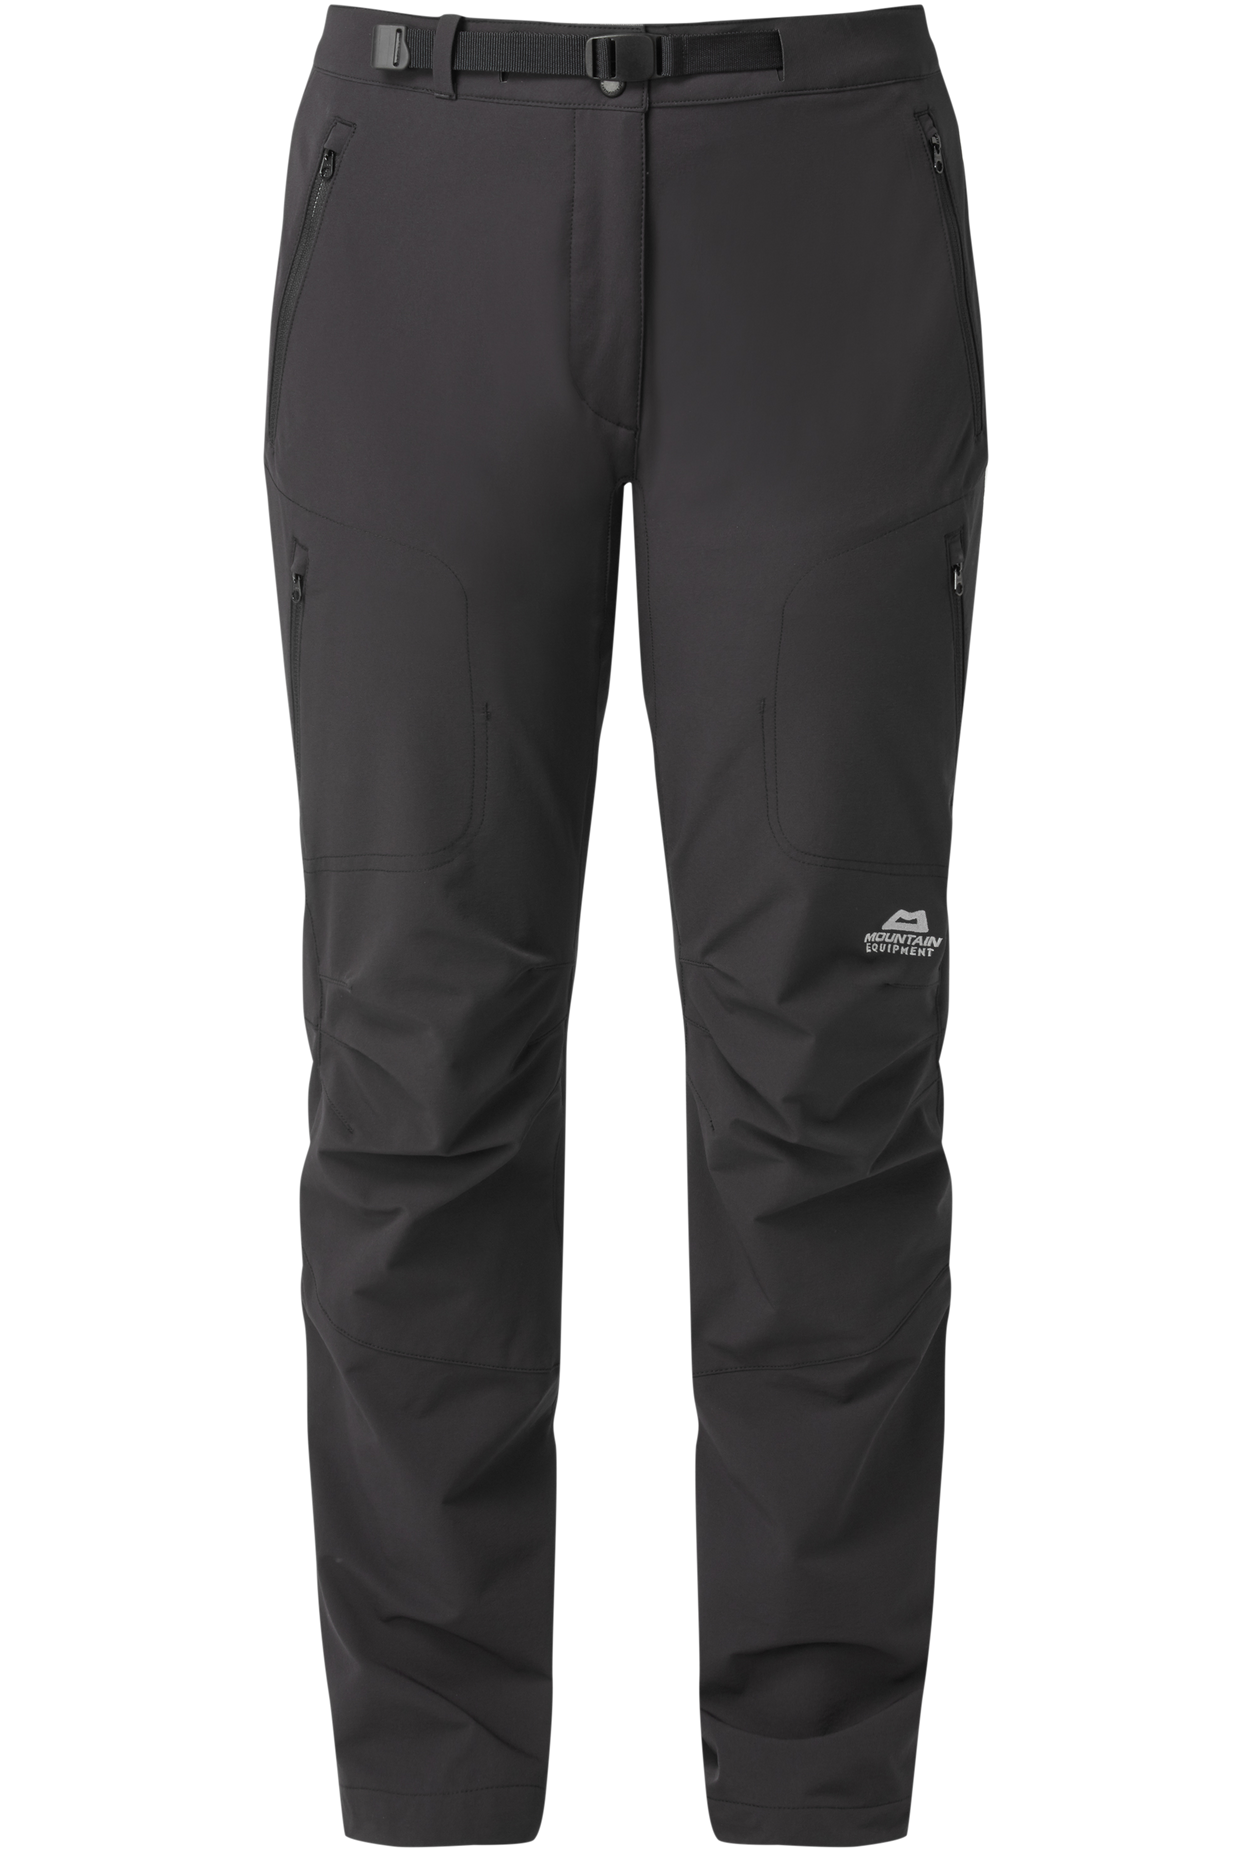 Mountain Equipment dámské softshellové kalhoty Chamois Wmns Pant - prodloužené Barva: black, Velikost: 14/L